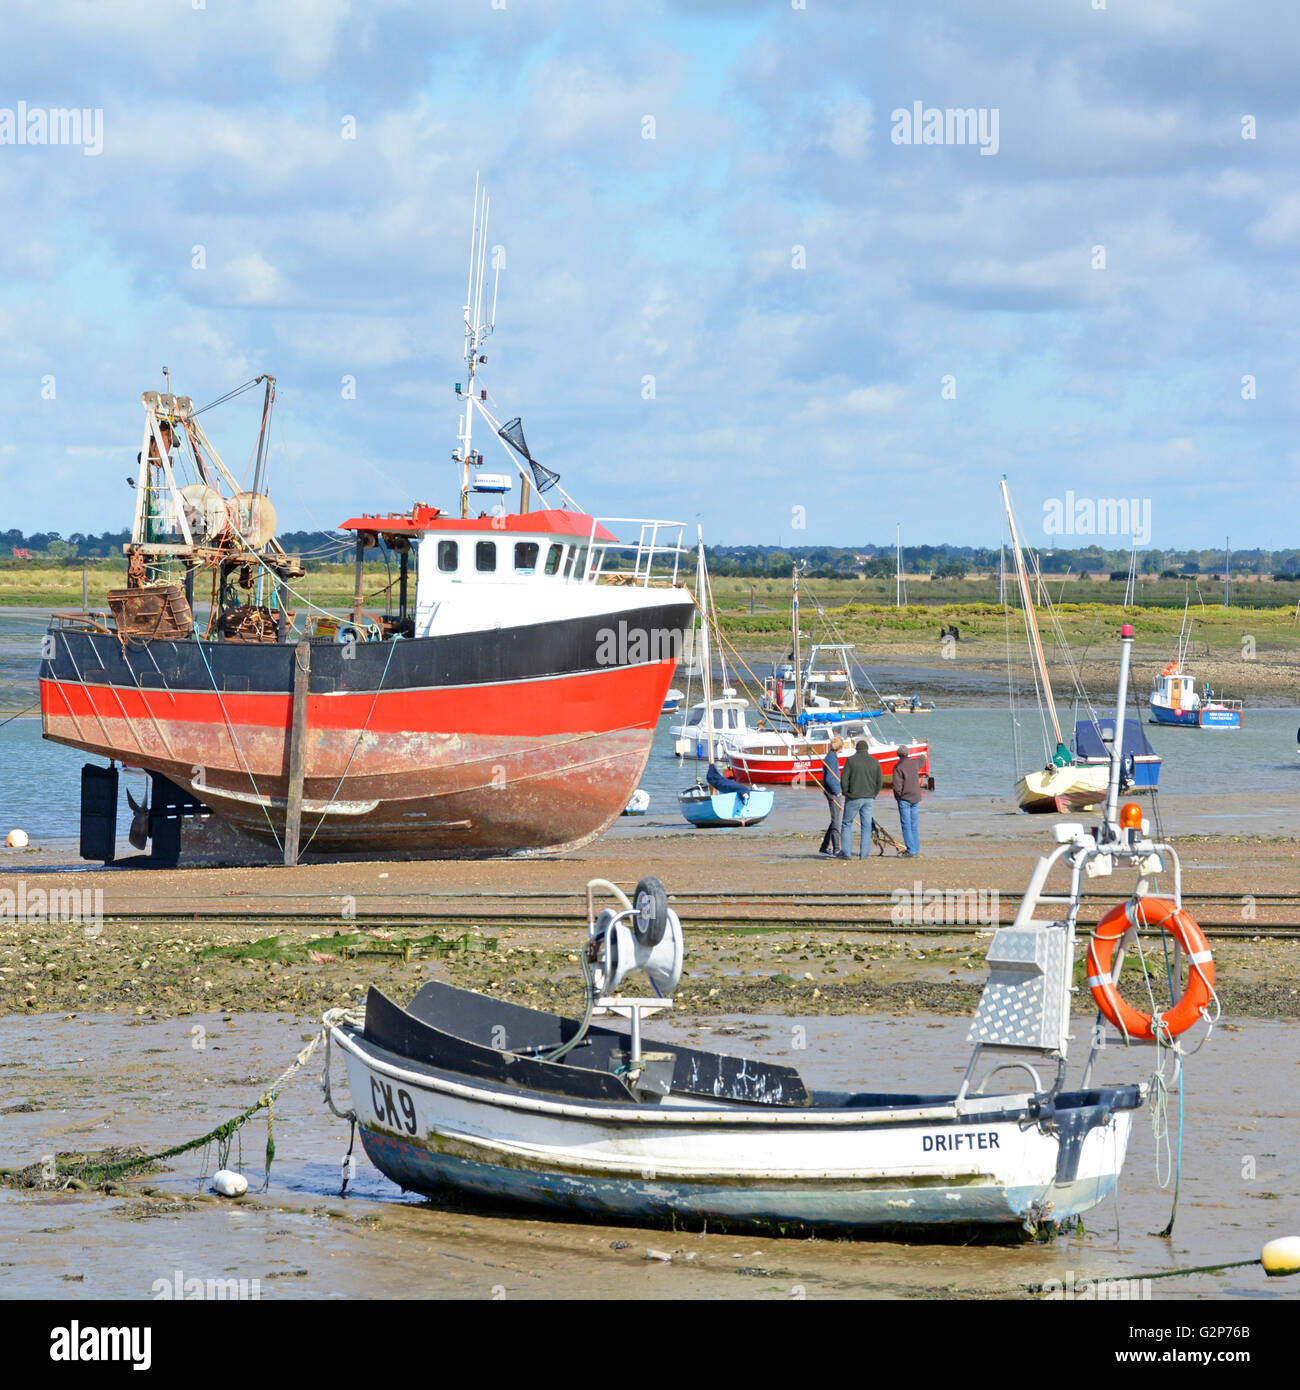 Bateaux à marée basse au paysage côtier sur l'île West Mersea Mersea à l'estuaire de la rivière Blackwater près de Colchester dans l'Essex, Angleterre, Royaume-Uni Banque D'Images